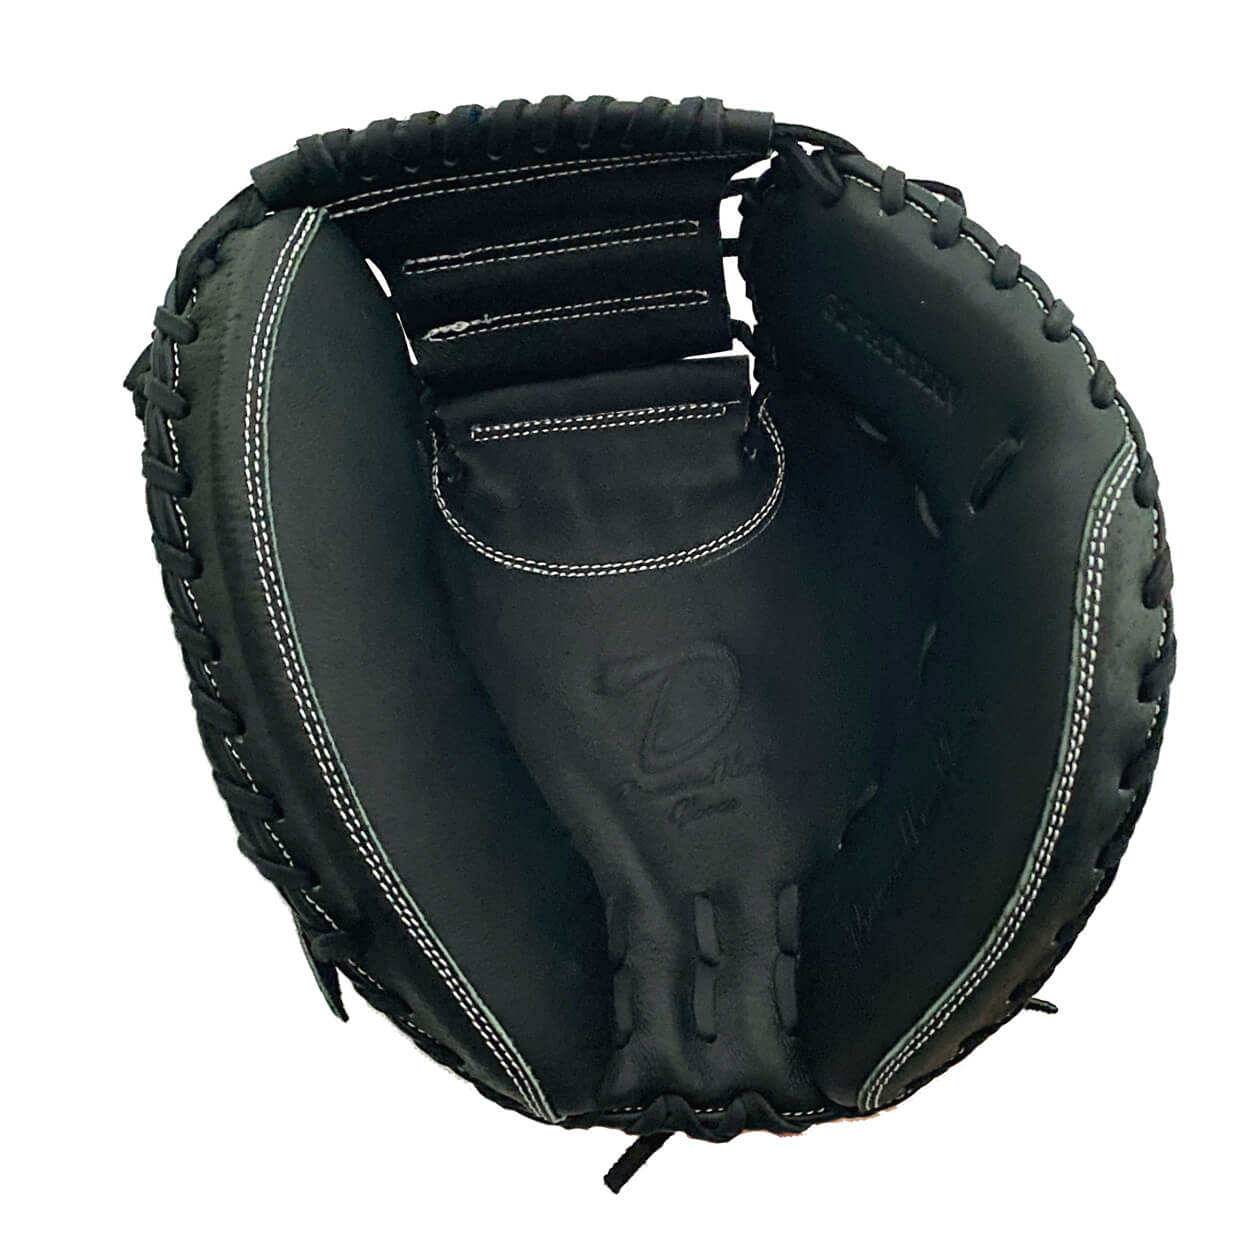 Play-ball 32” Black Baseball Catcher's Mitt - Hot Hitters | Baseball & Softball Shop - baseball softball shop online europe shipping 